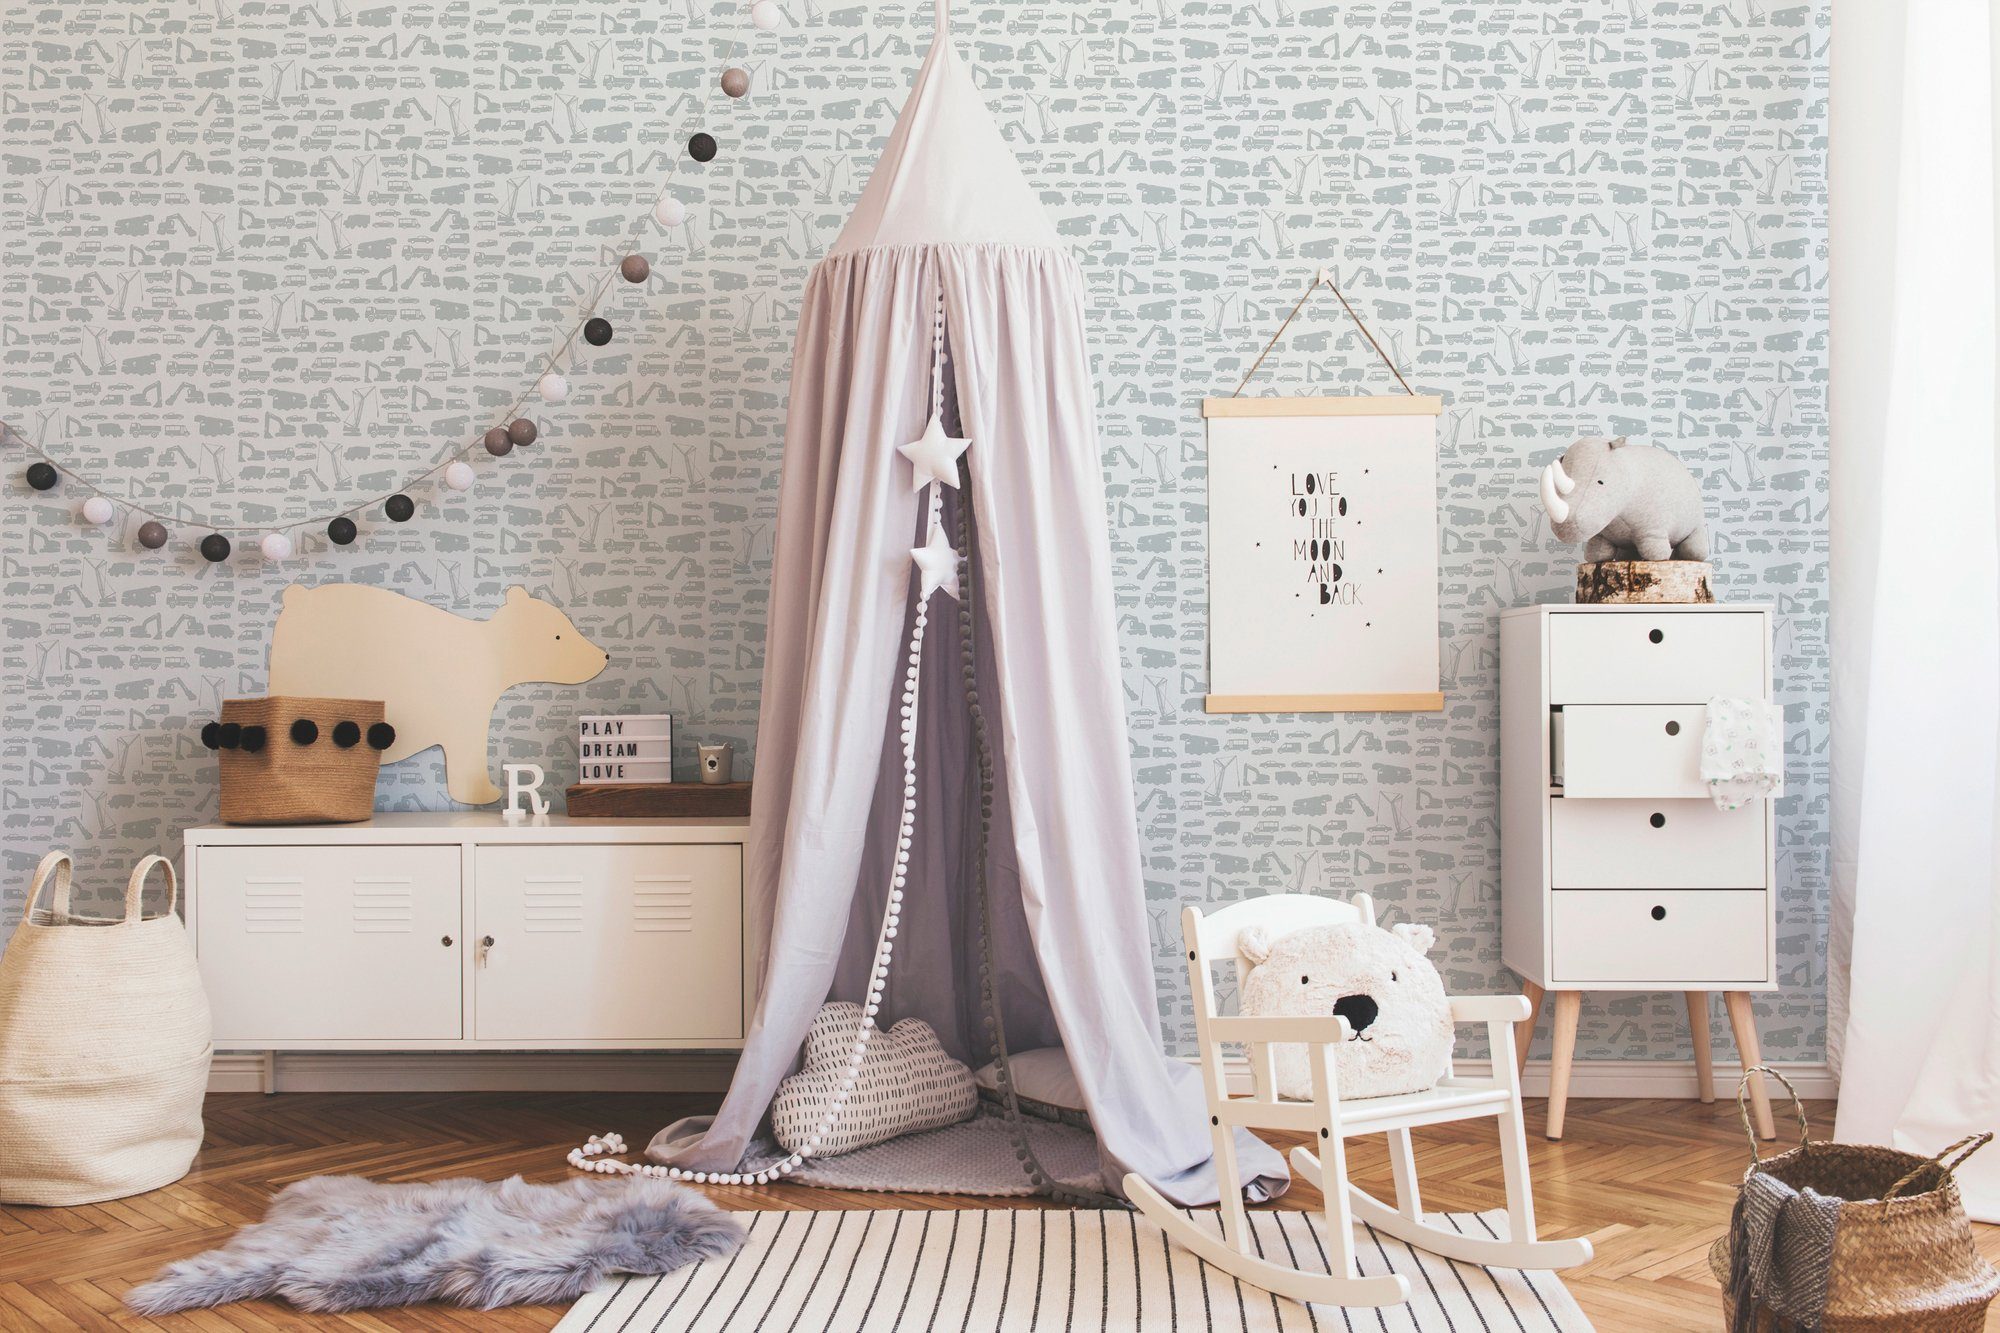 A.S. Création living Kinderzimmer grau/weiß walls glatt, Tapete Stars, Little Vliestapete